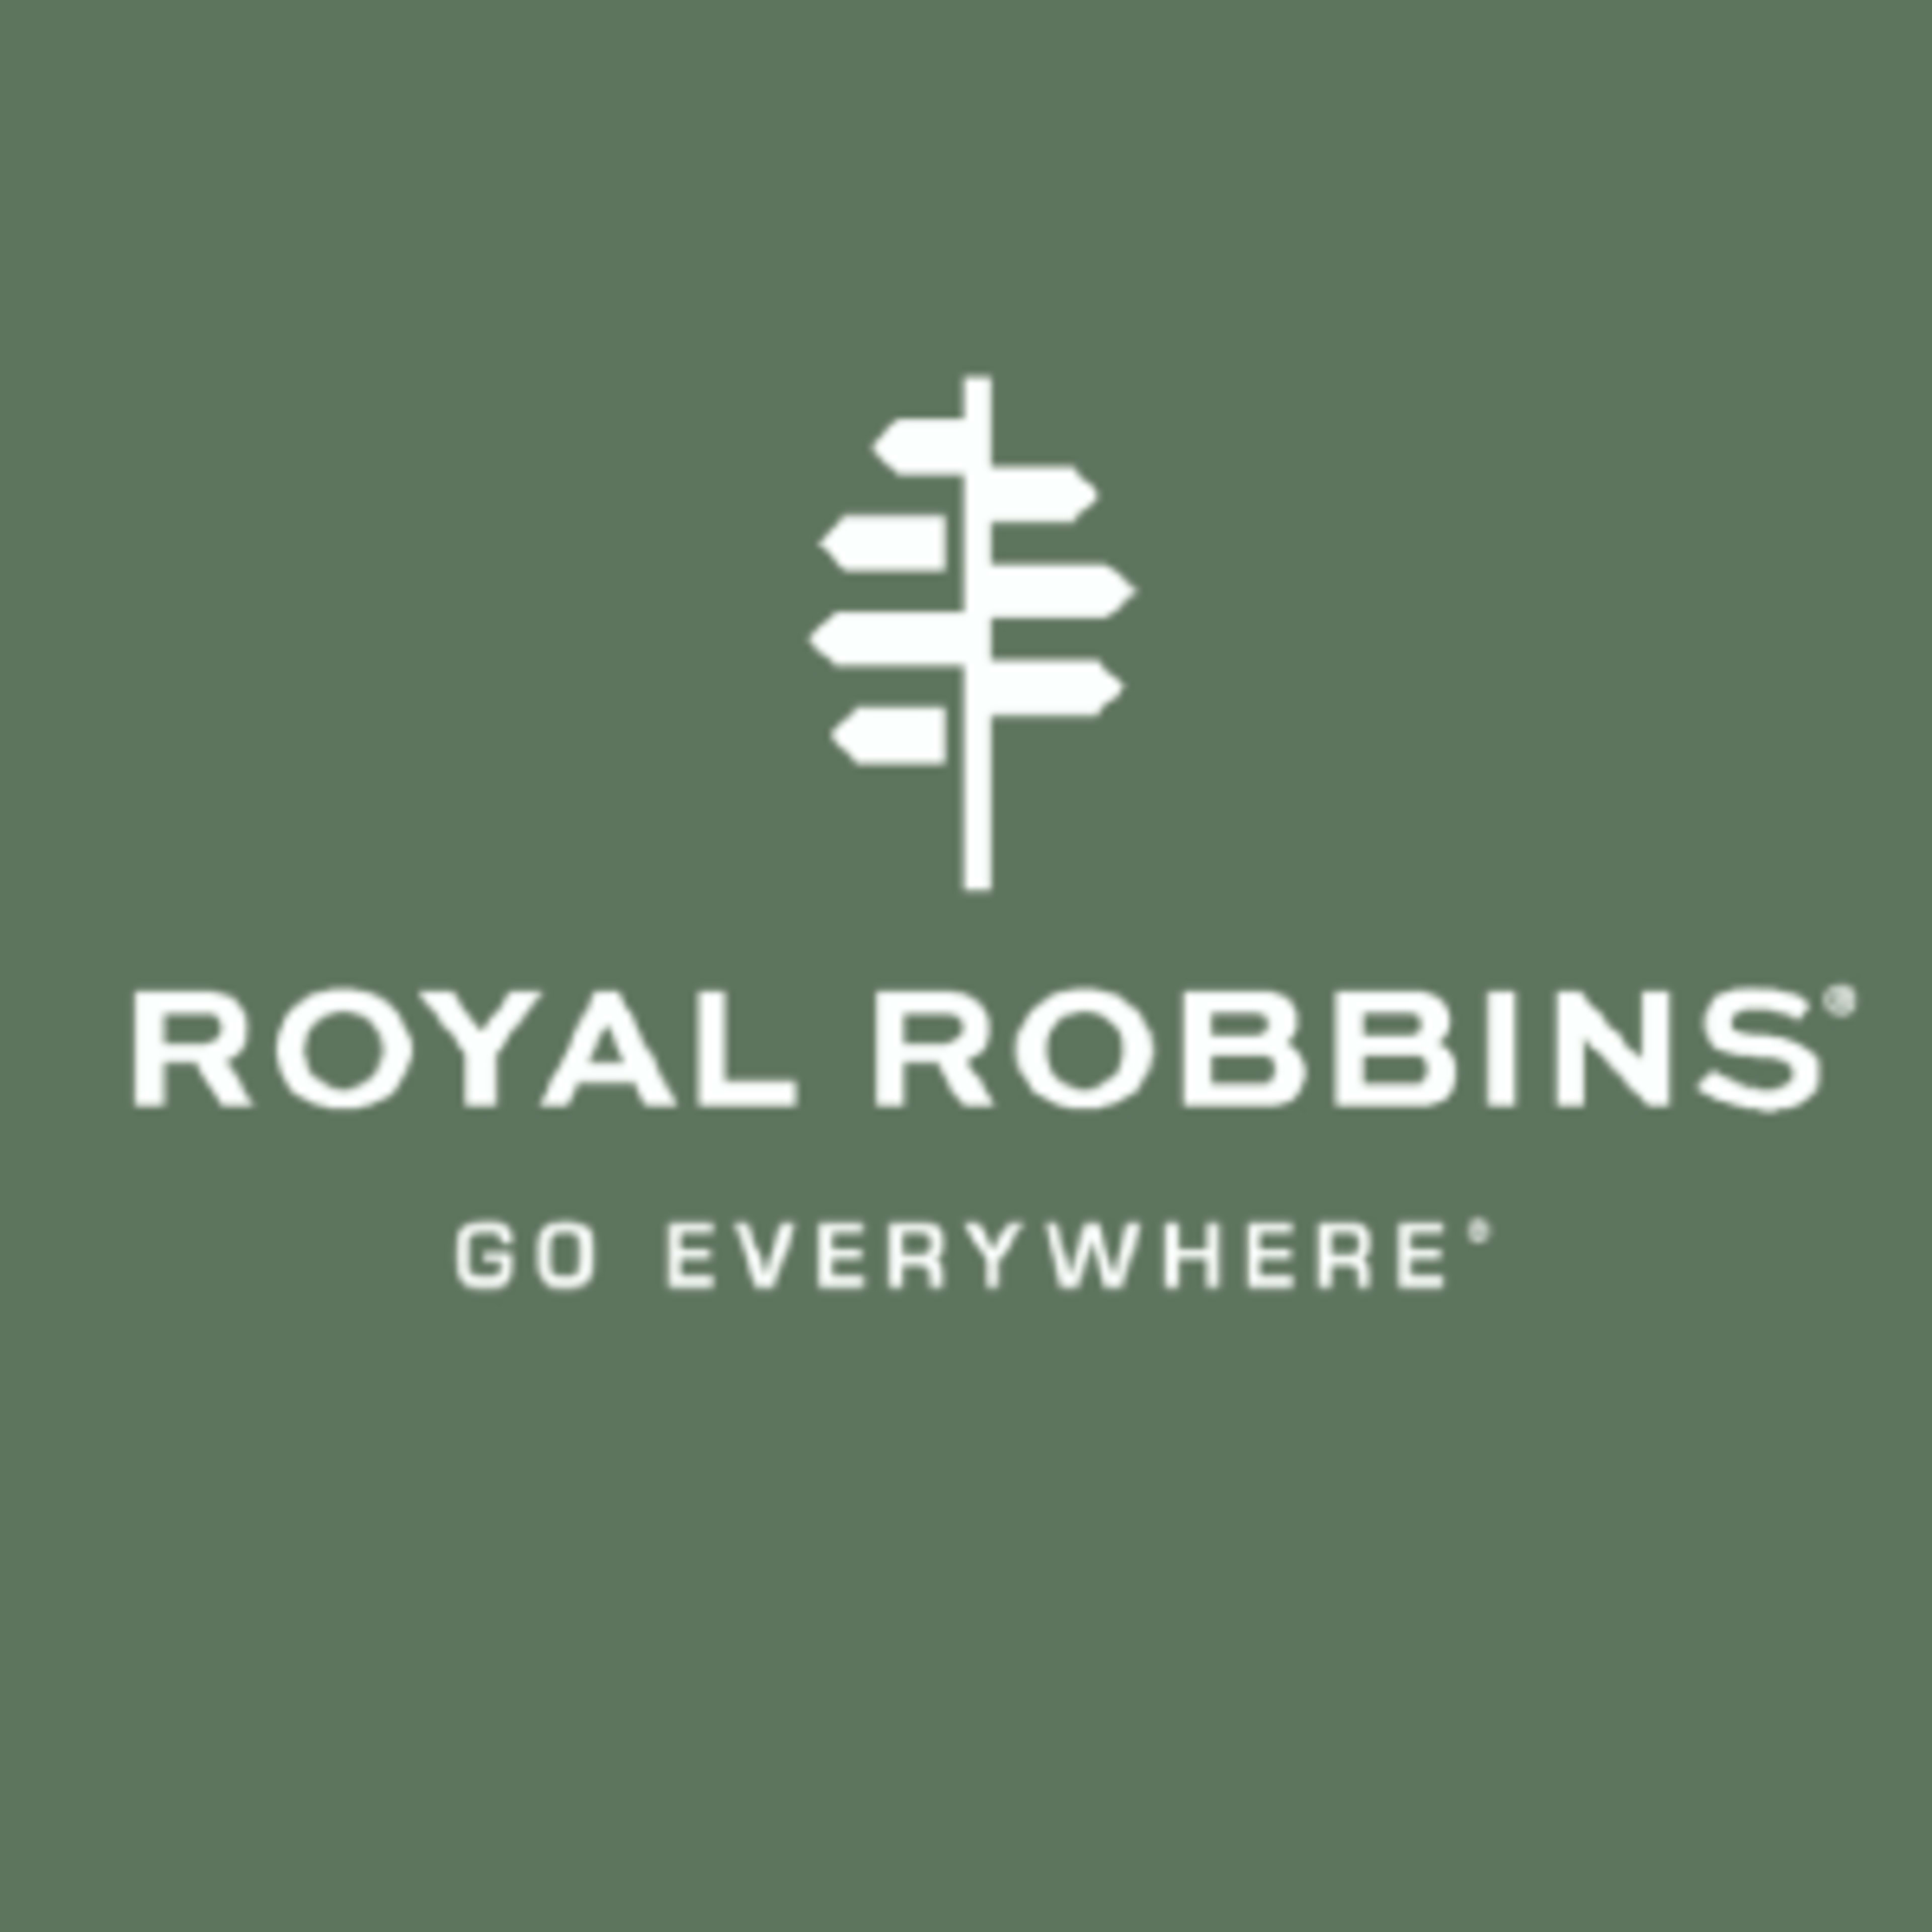 Royal Robbins Code